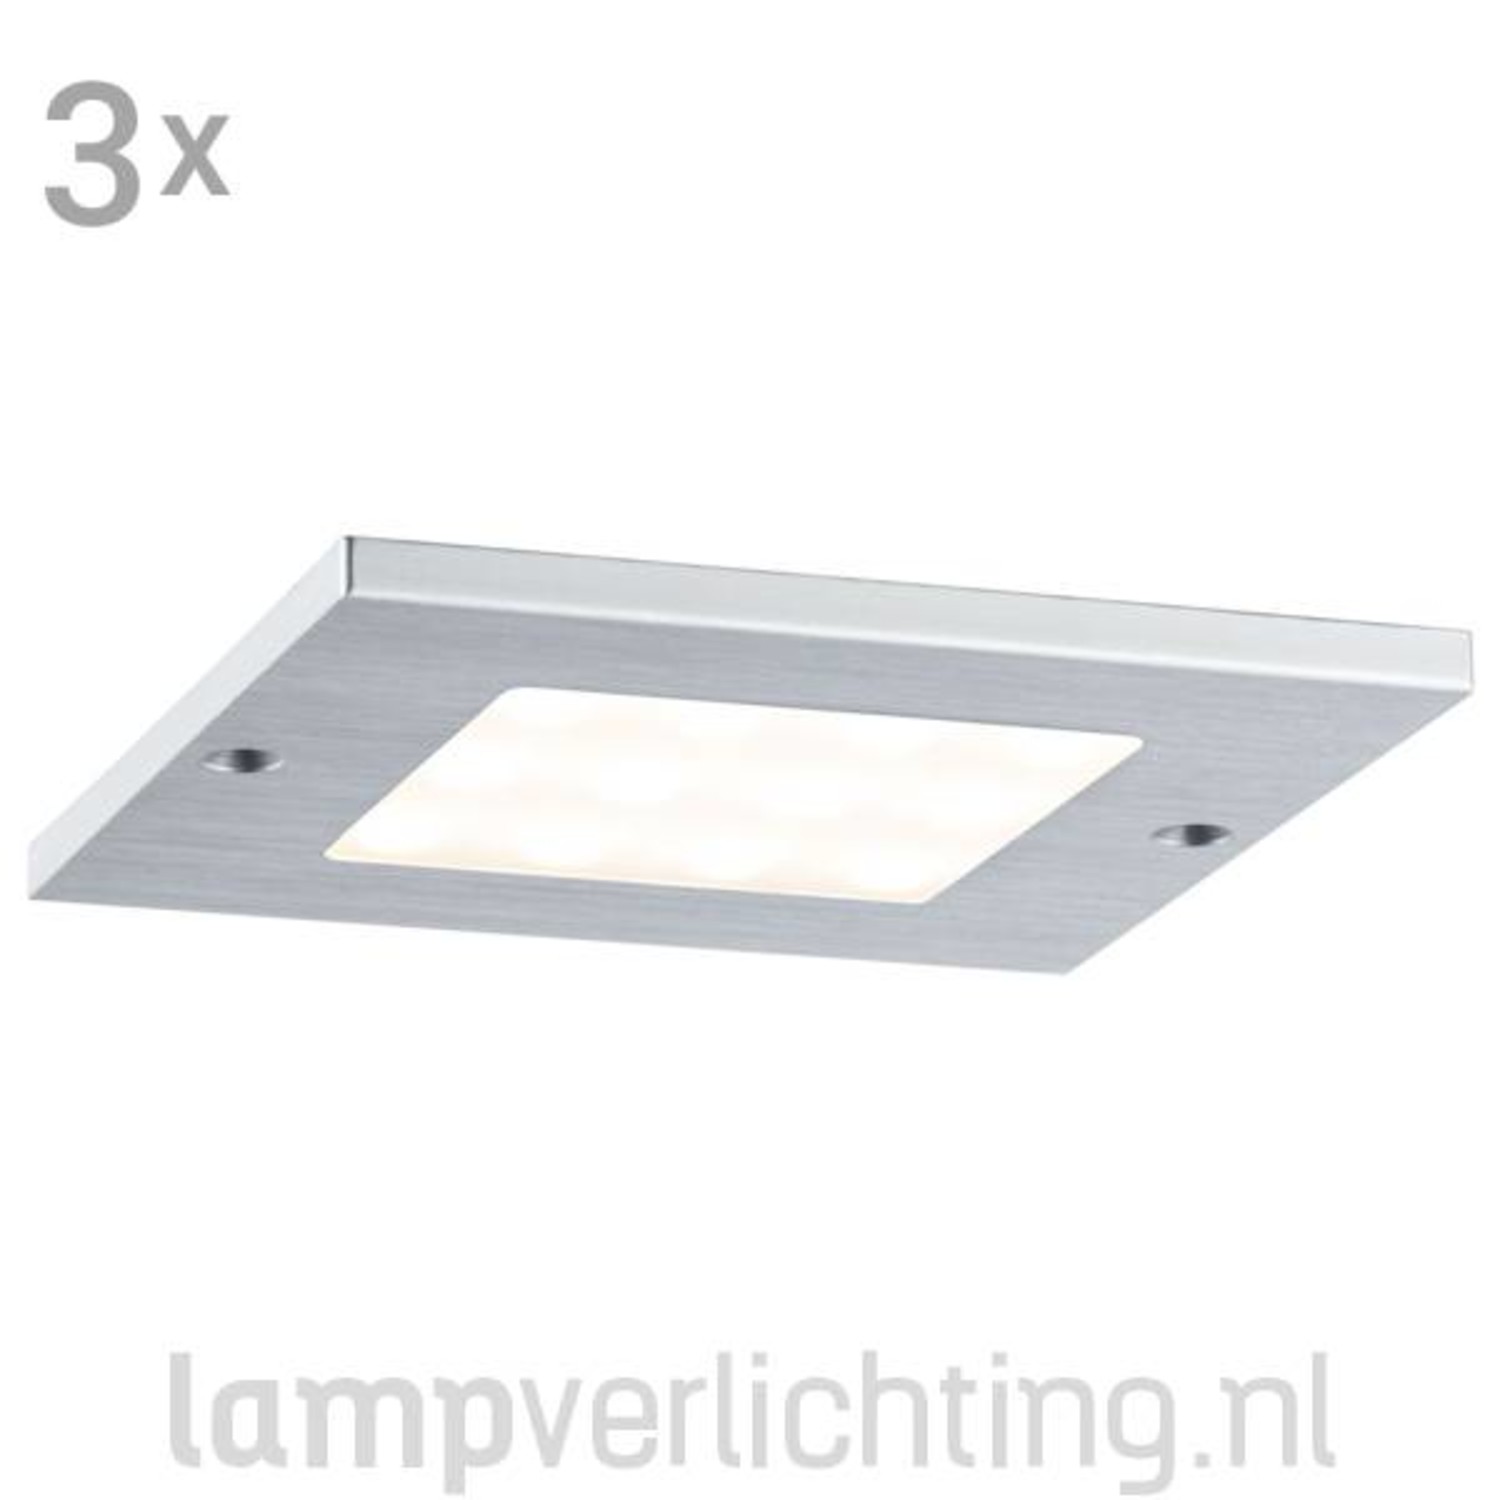 Veronderstellen Ga wandelen Er is behoefte aan Platte LED Opbouwspots Vierkant - Set van 3 - Slechts 4 mm dikke spots -  LampVerlichting.nl